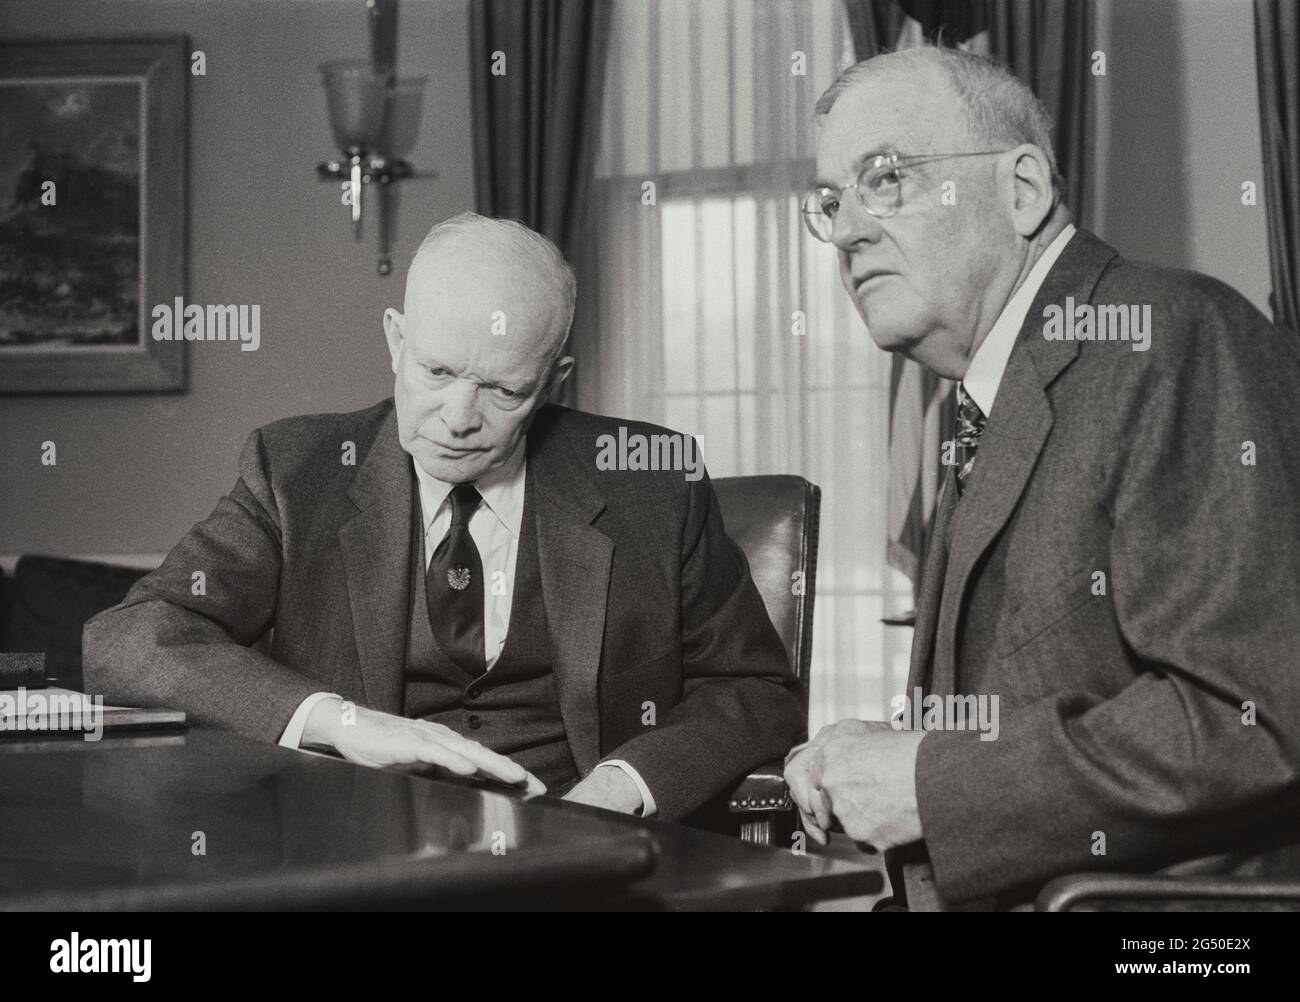 IKE (Dwight D. Eisenhower) et Dulles (John Foster Dulles, 52e secrétaire d'État des États-Unis) au bureau d'Ike. 11 décembre 1957 Banque D'Images